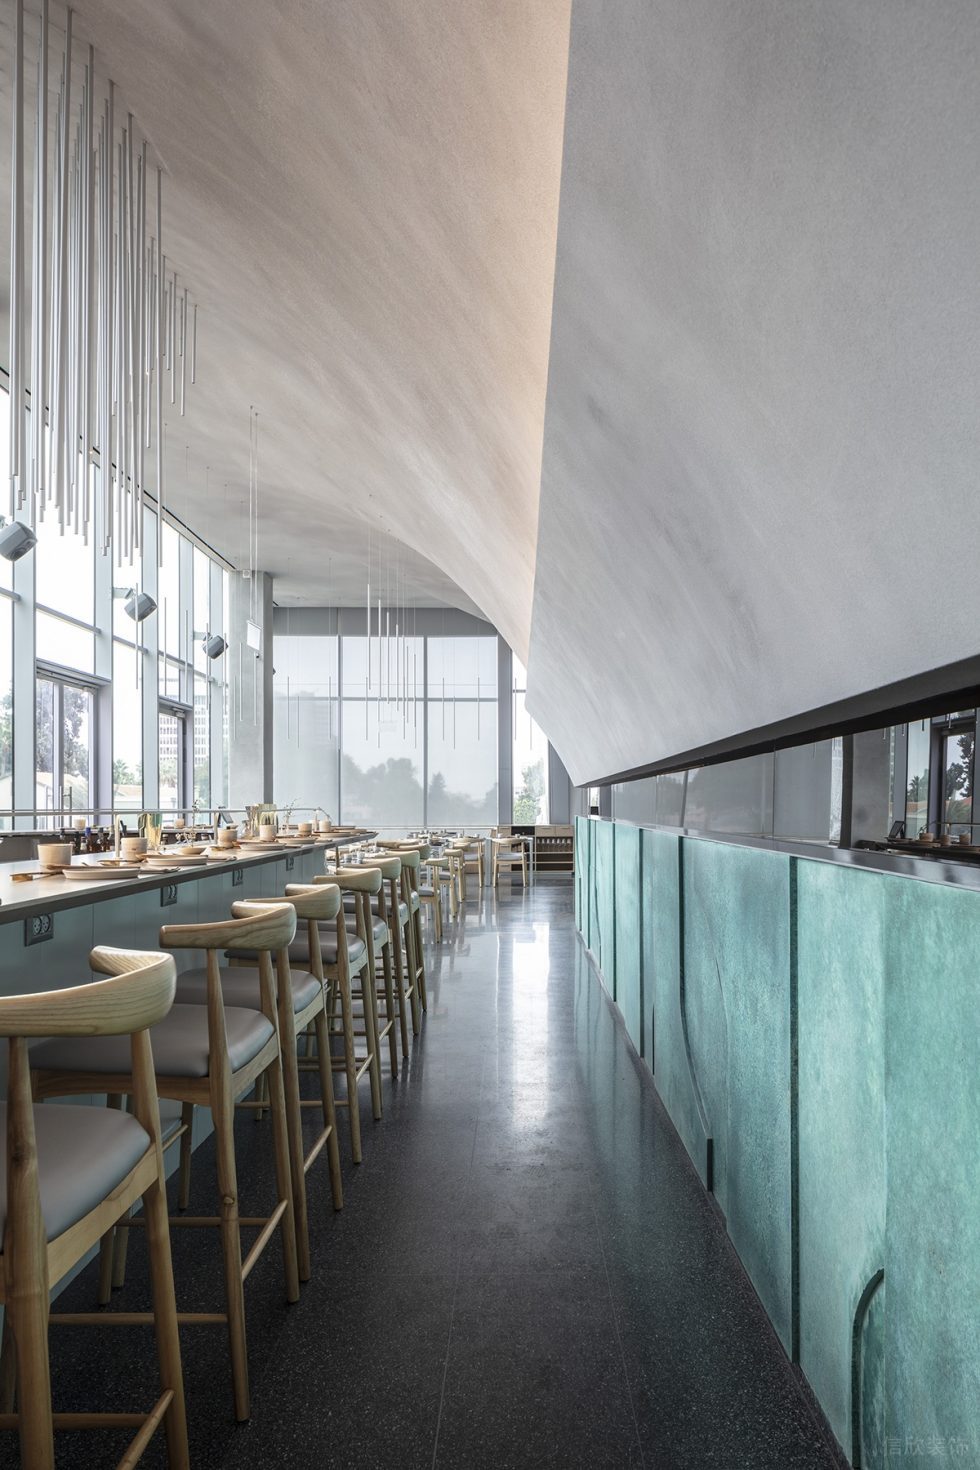 现代简约风格餐厅内部弧形灰白色顶面装修效果图